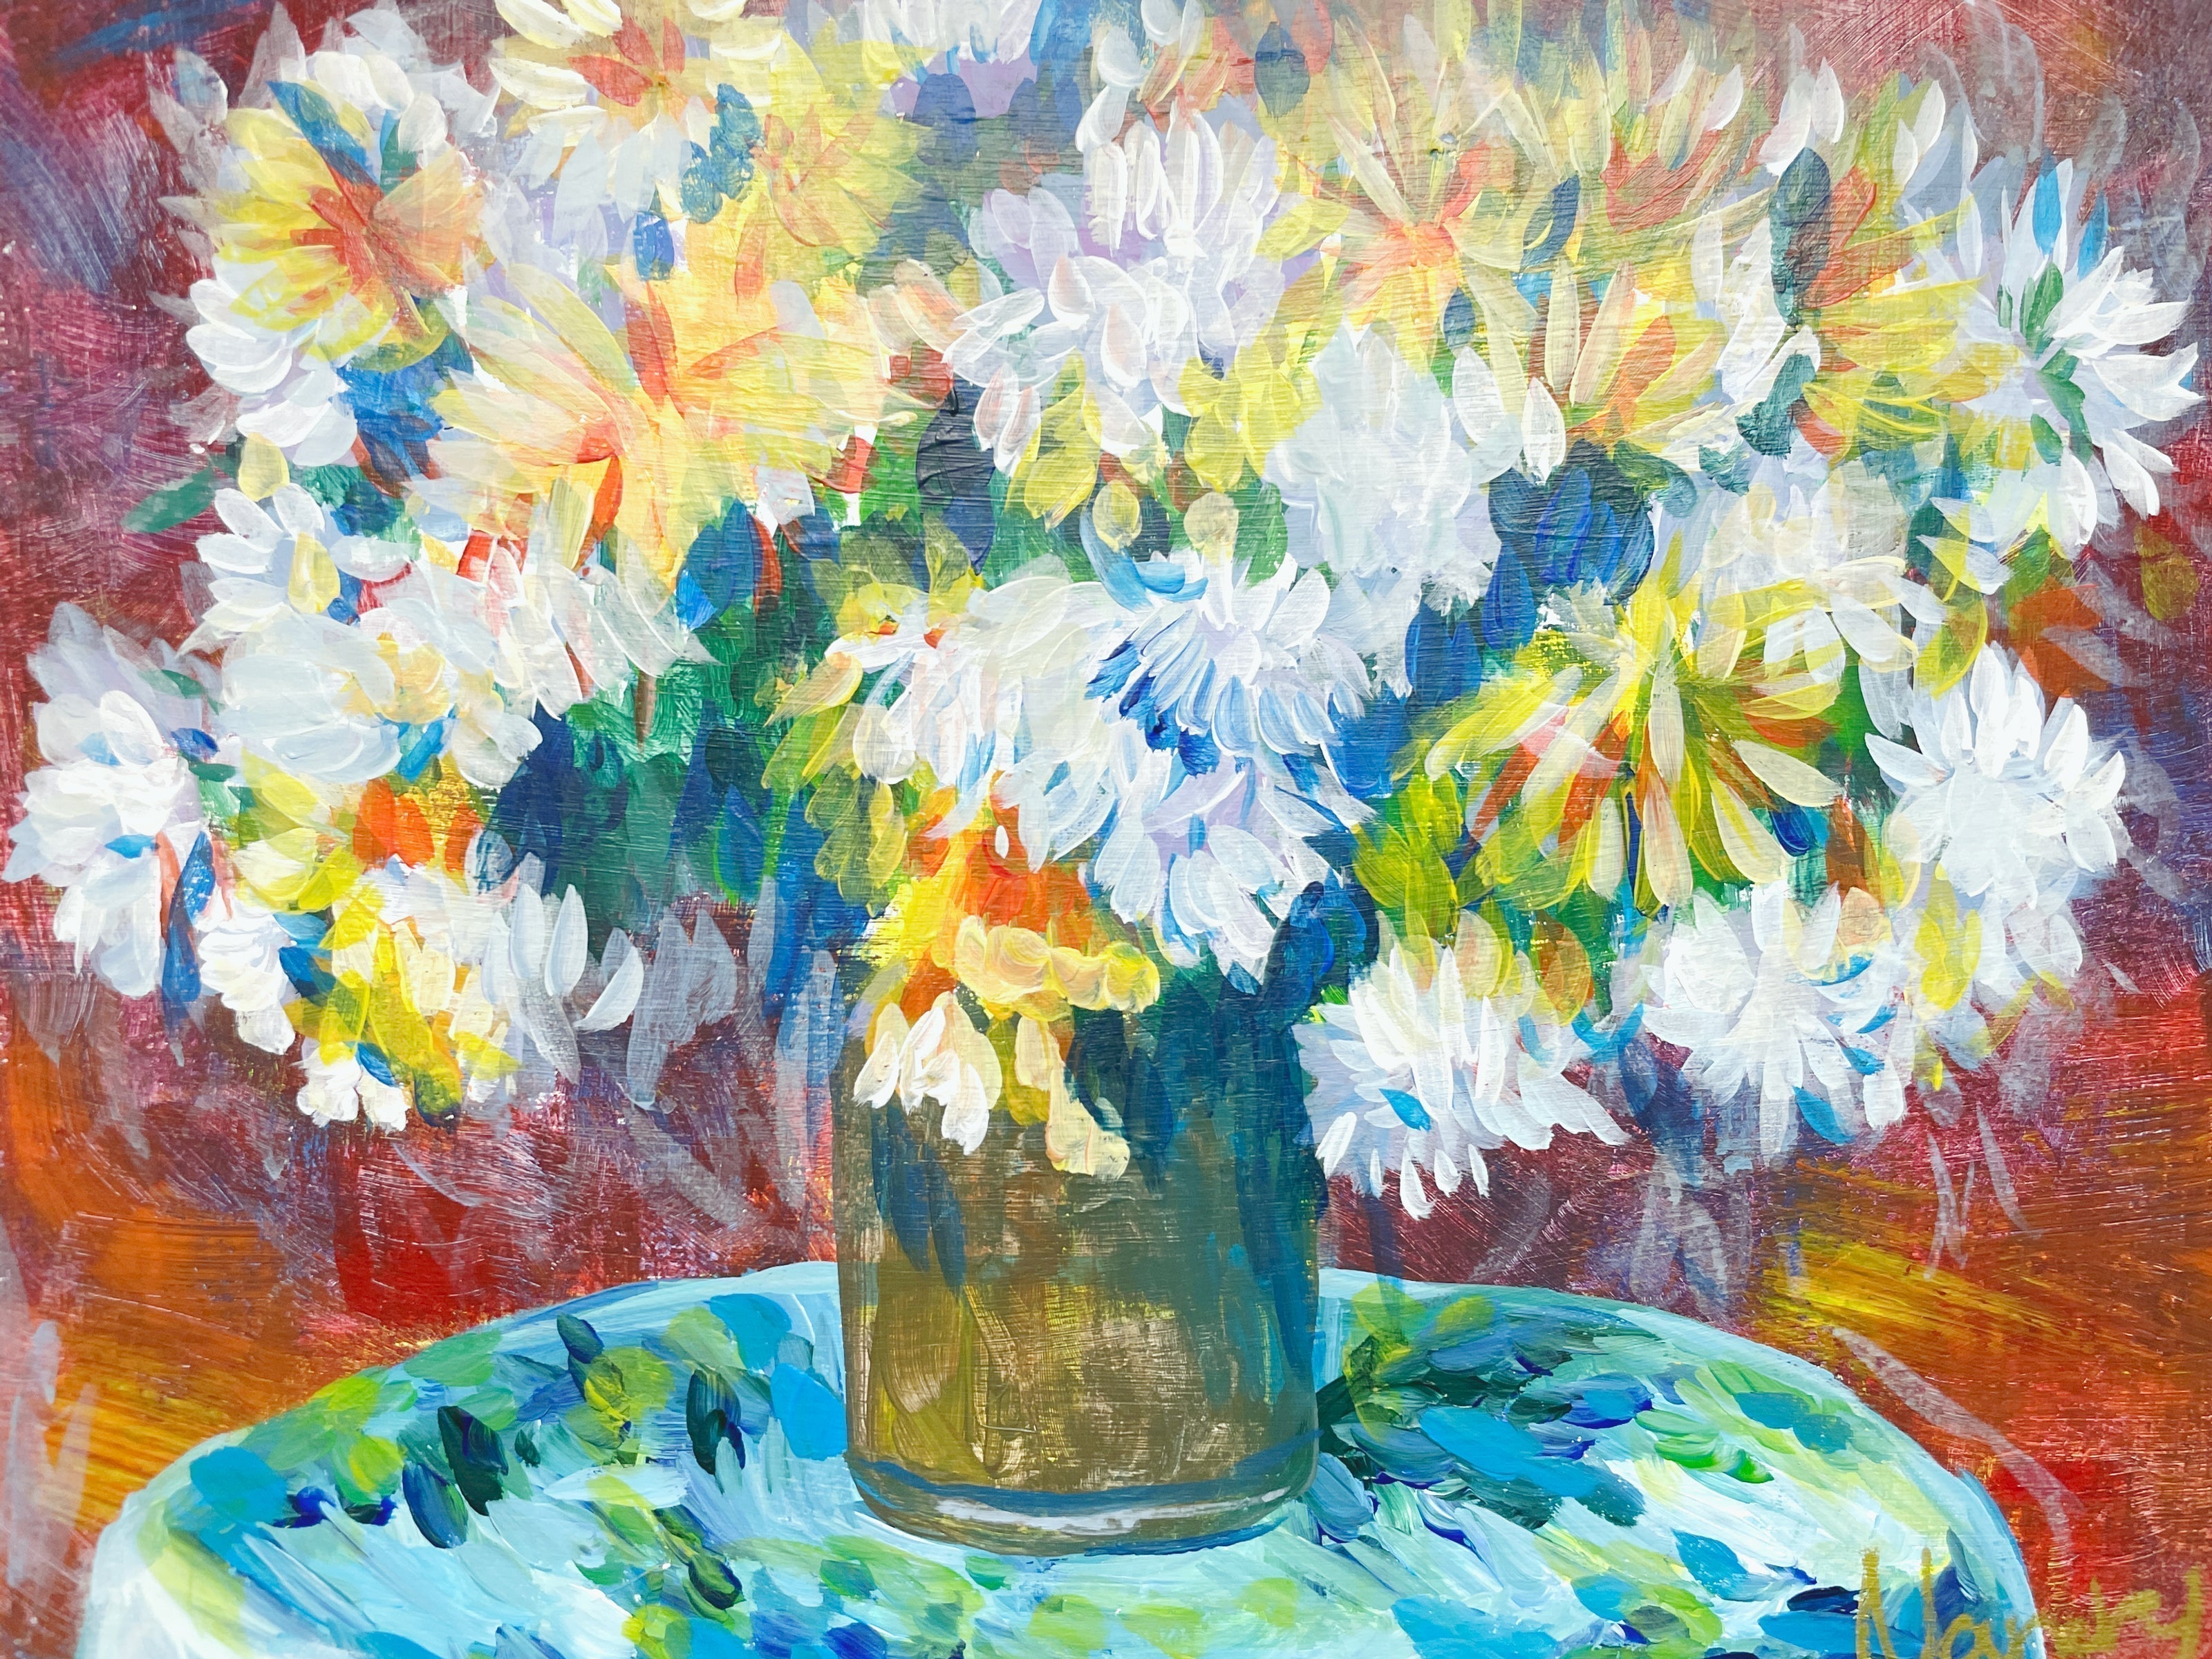 【日本橋】3月9日 (土) 10:00-13:00 | オーギュスト・ルノワール | 花束 (Bouquet of Chrysanthemums by Pierre-Auguste Renoir at Nihon-bashi)